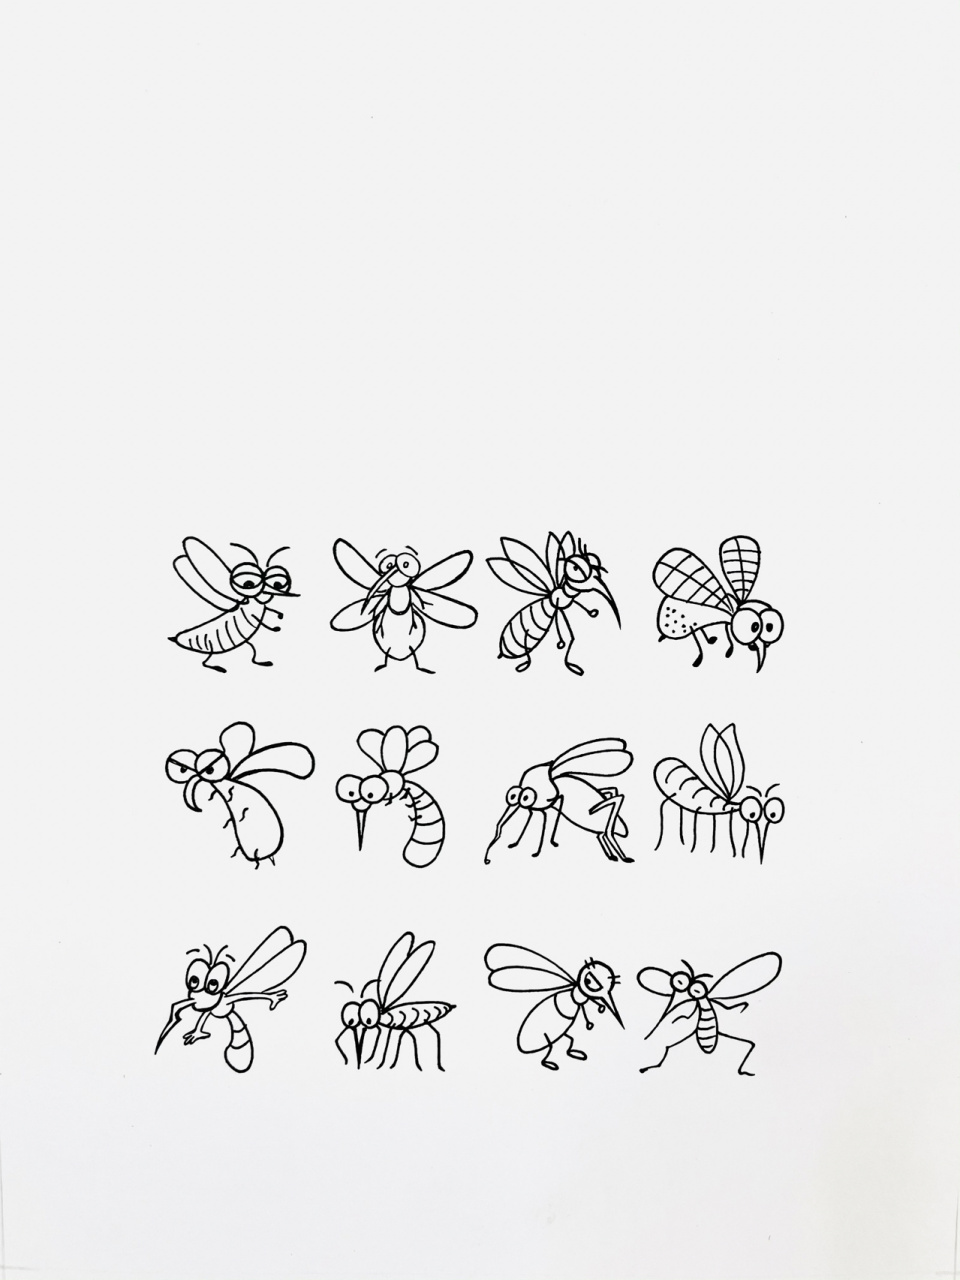 【简笔画】蚊子03 来分享一组蚊子03简笔画 大家还喜欢什么,留言